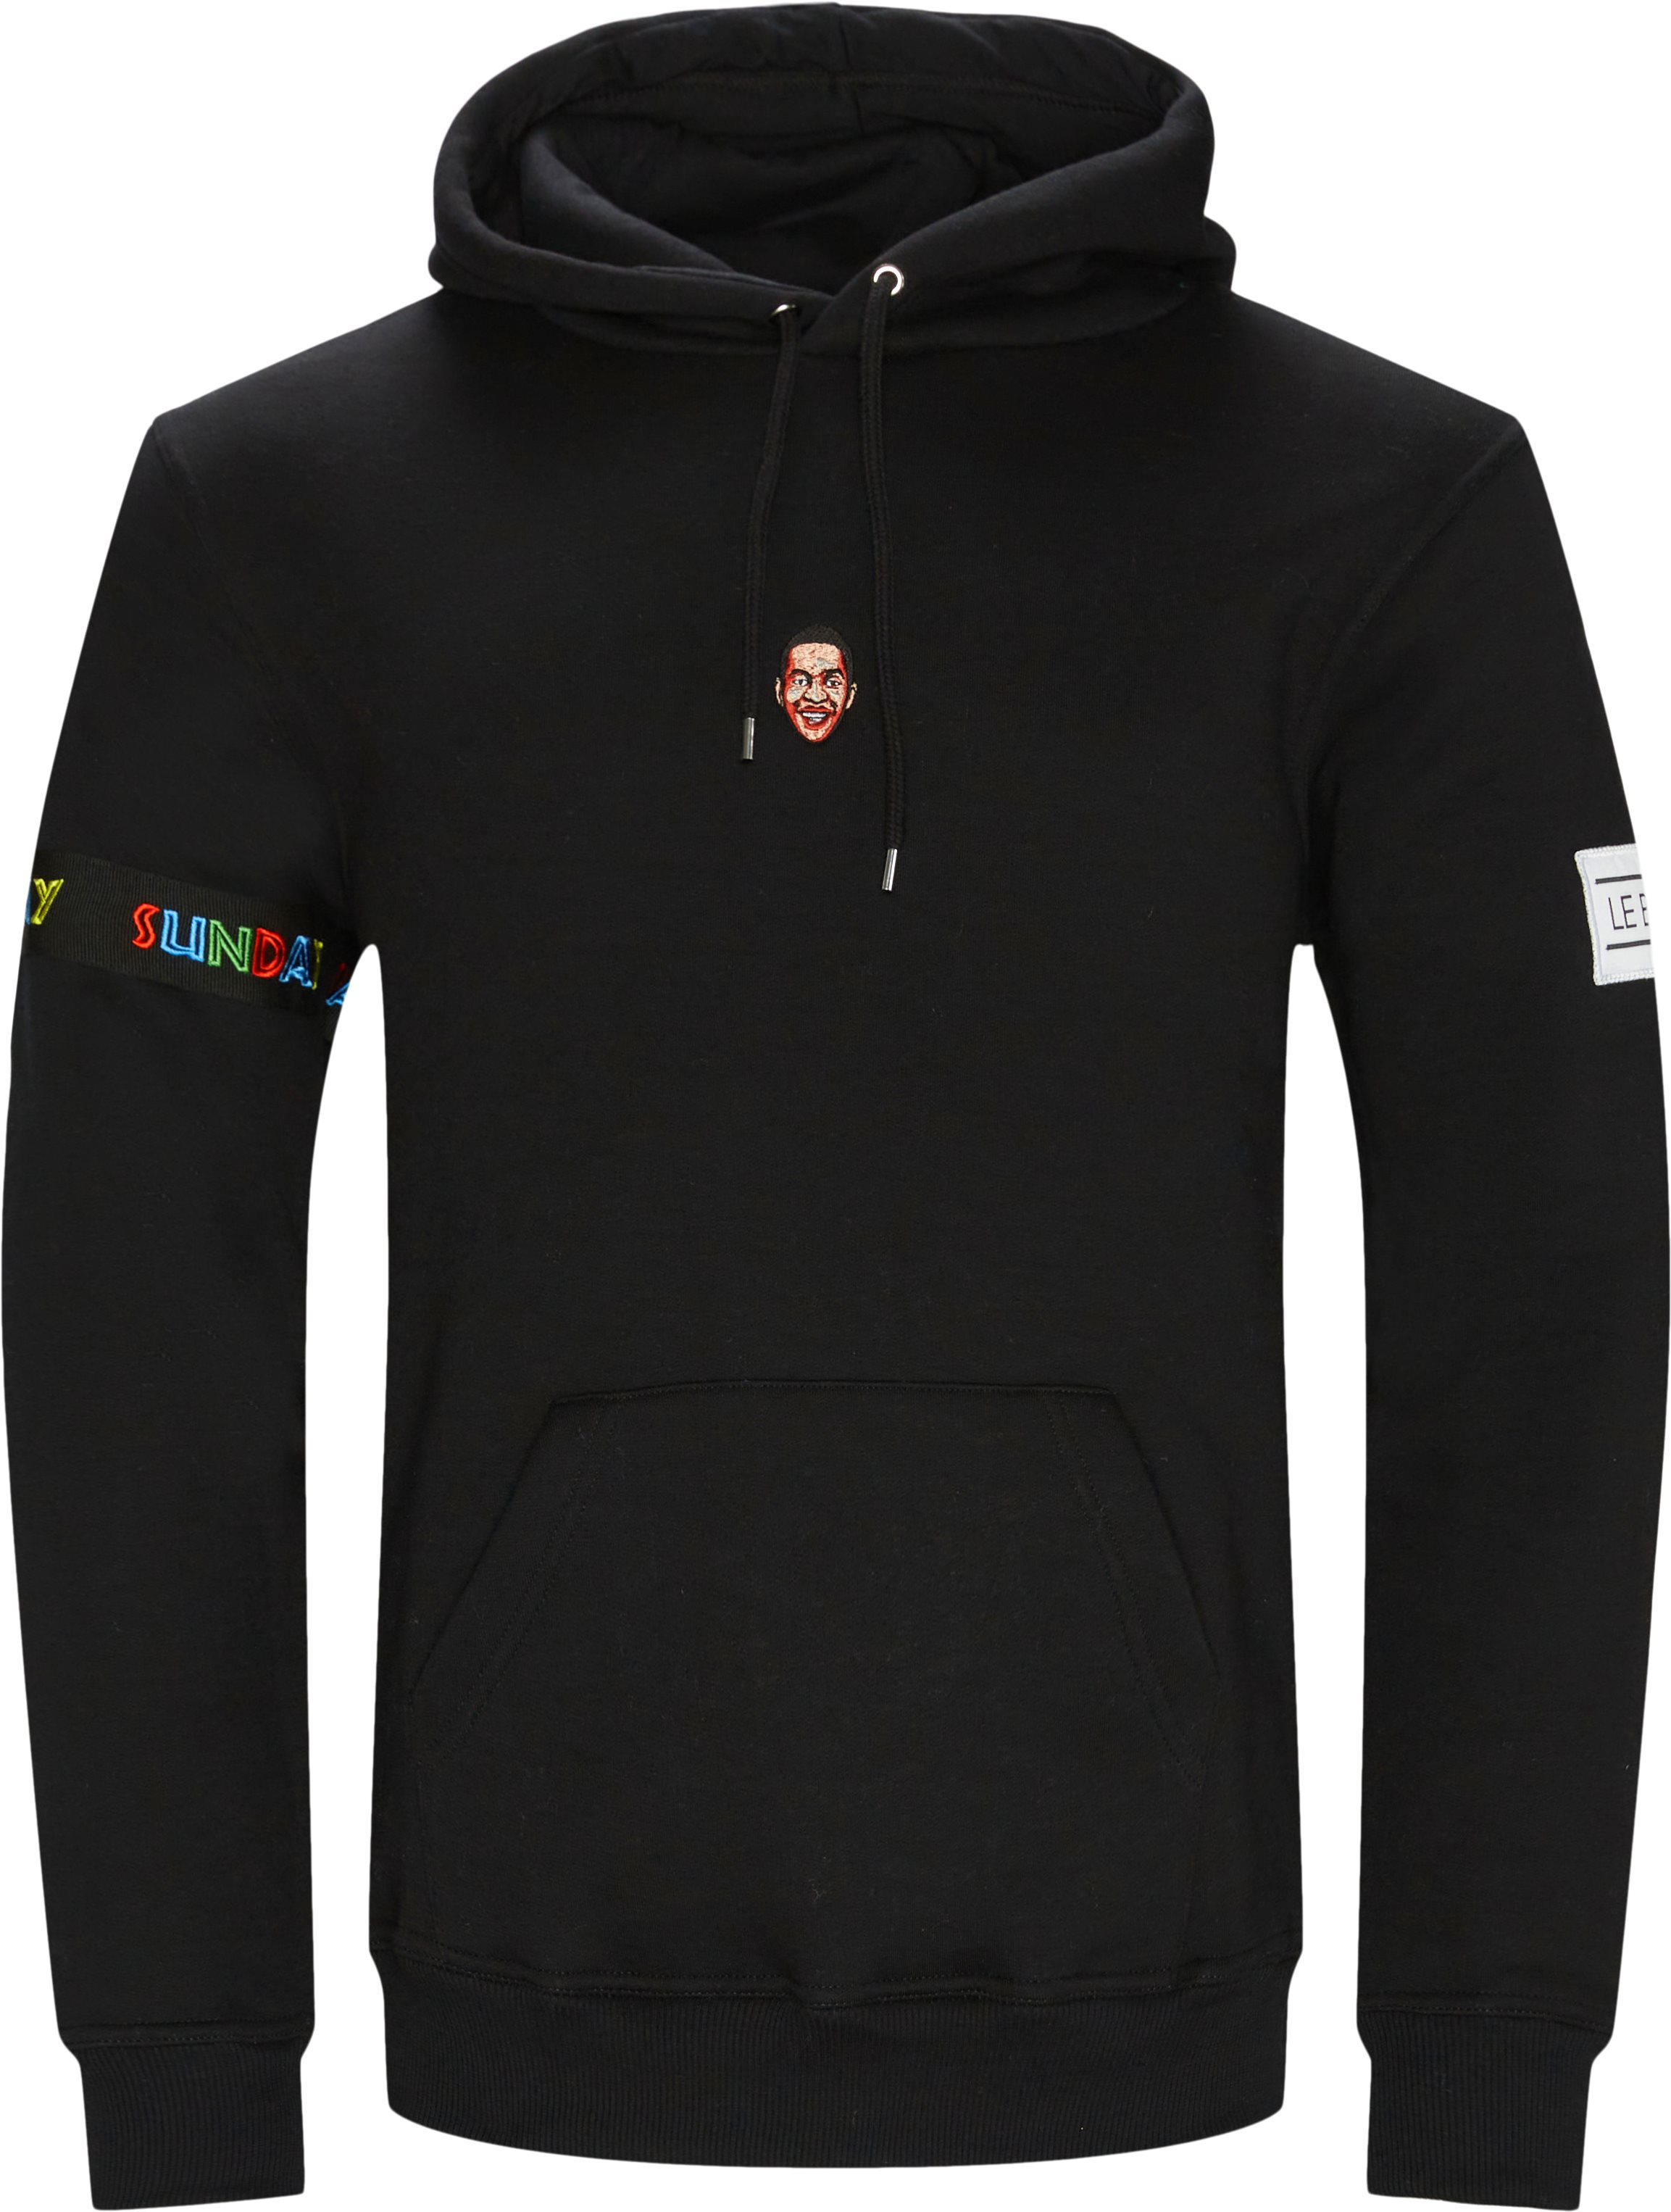 SENEGAL hoodie - Sweatshirts - Regular fit - Black